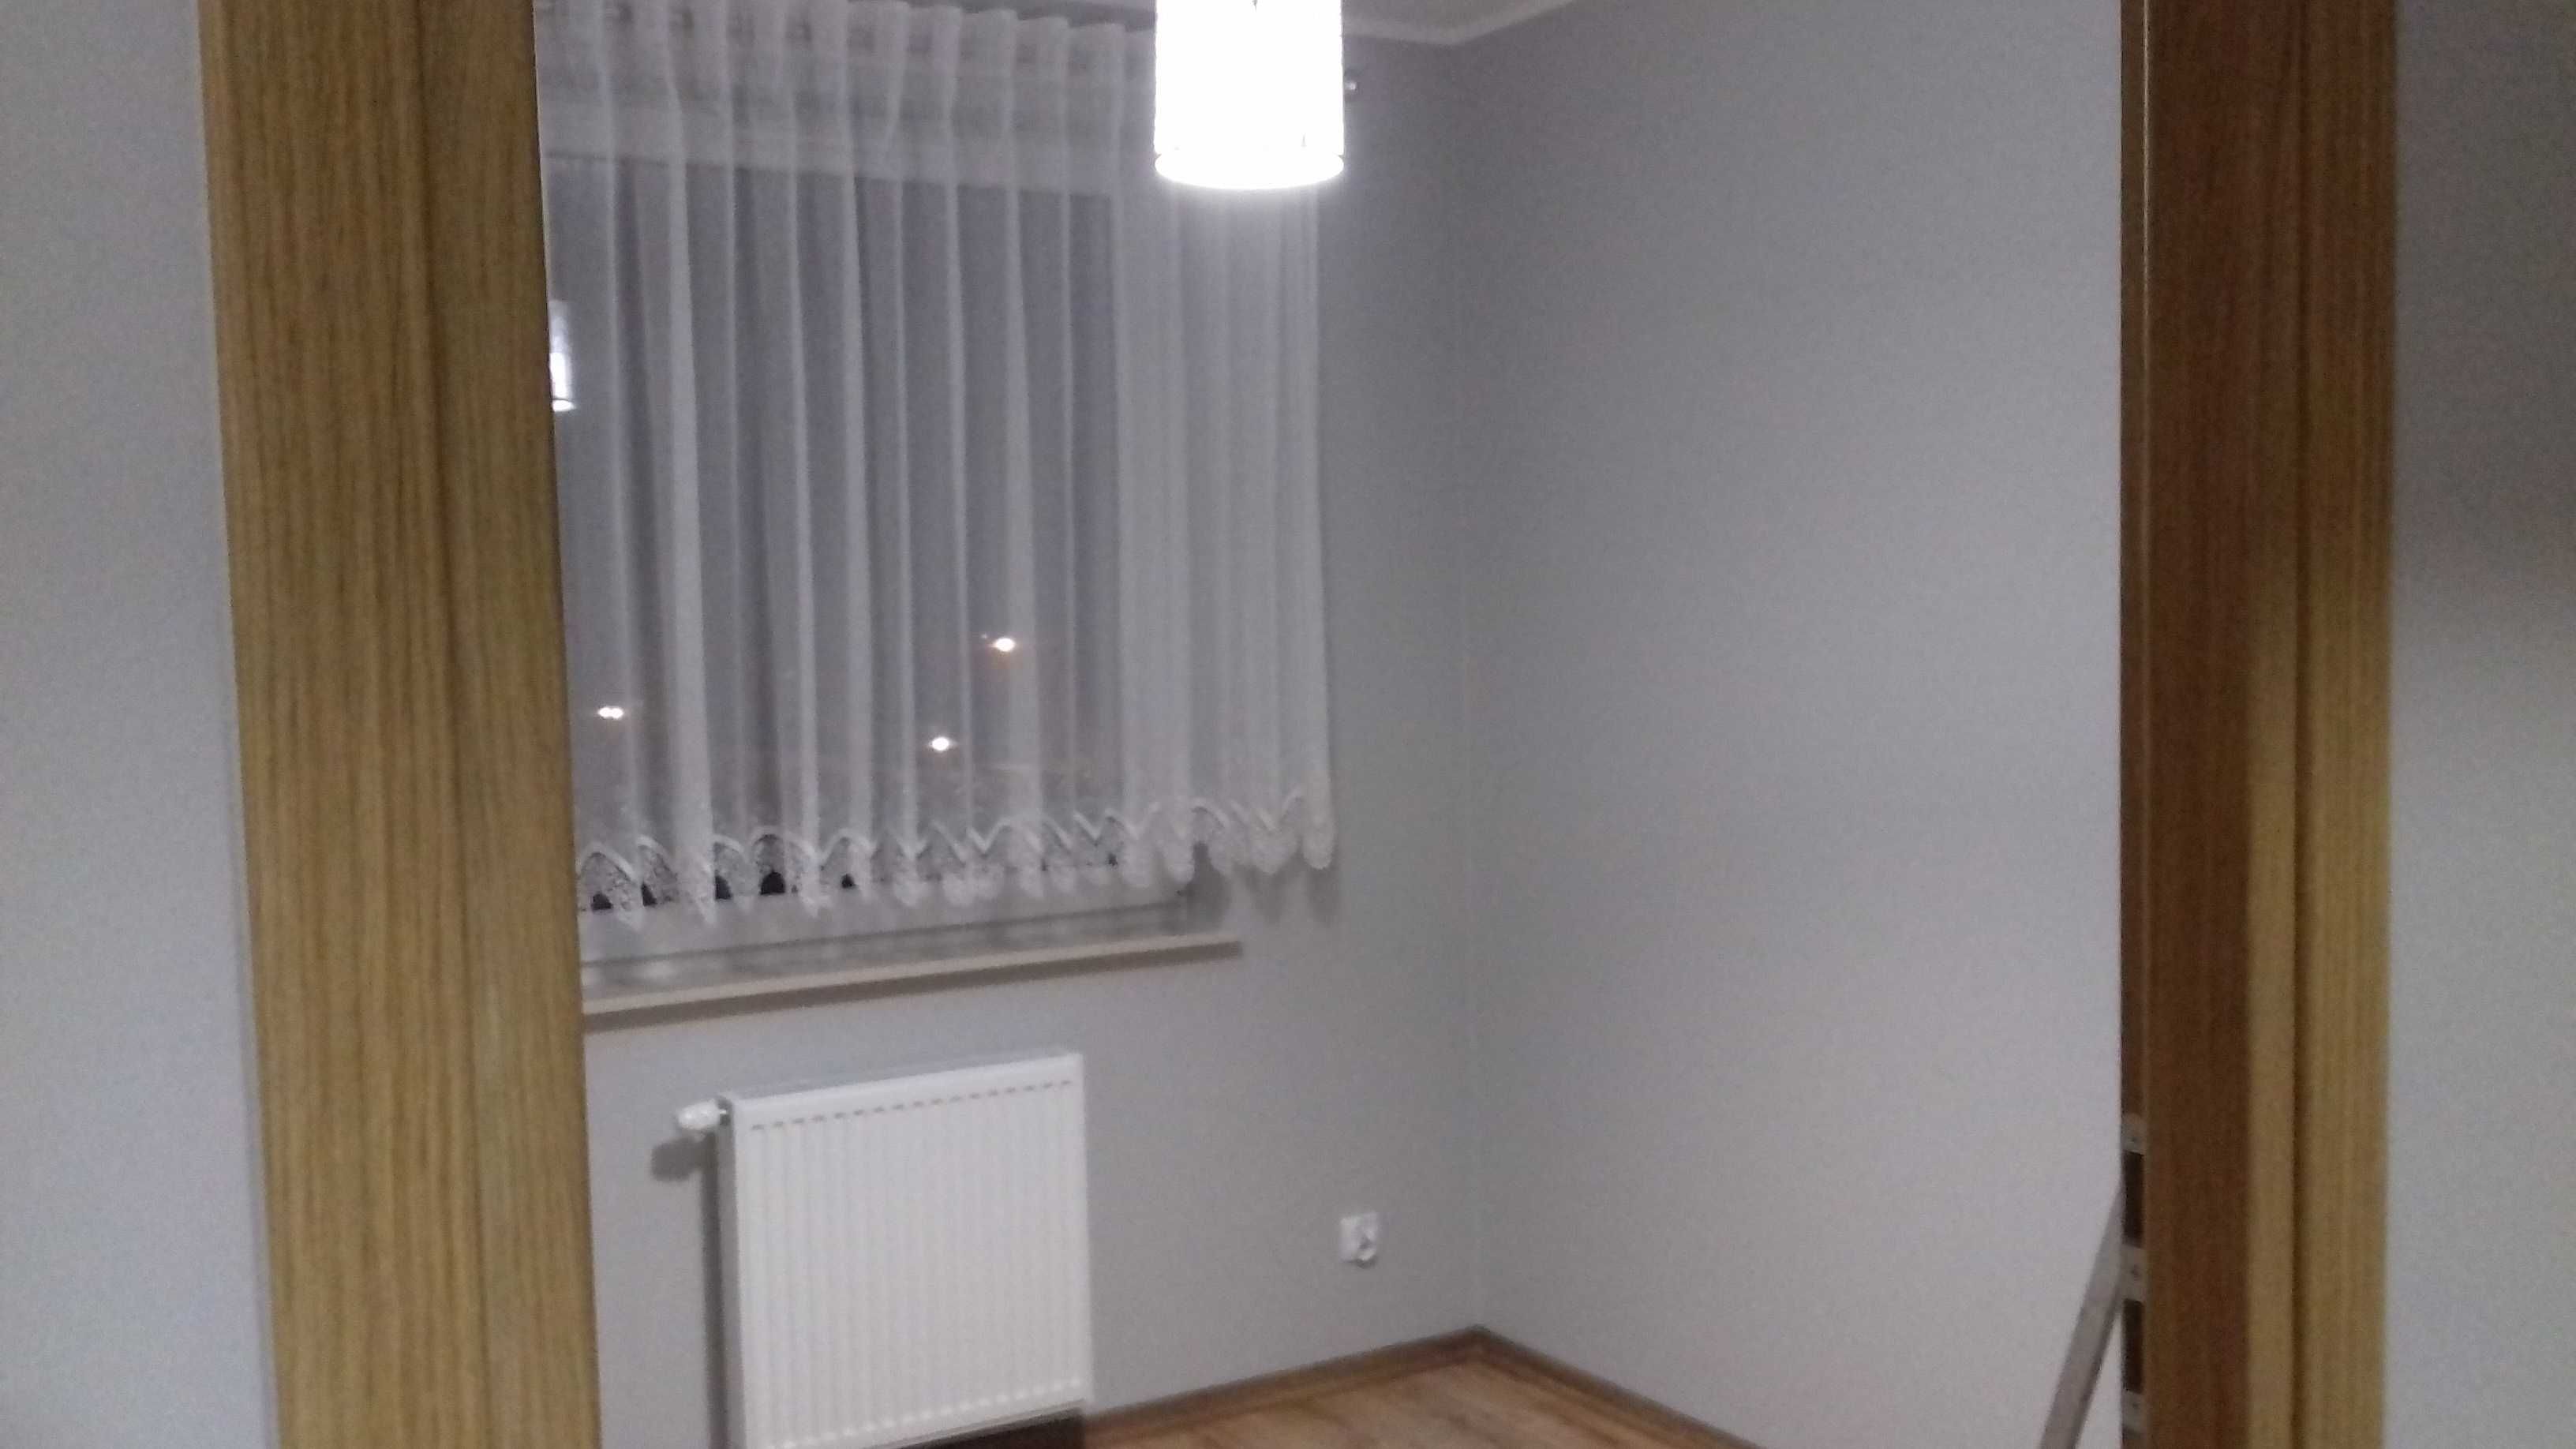 Mieszkanie 33 m2, Bolszewo, ul.Wspólna 10, Nowe osiedle ORLEX.